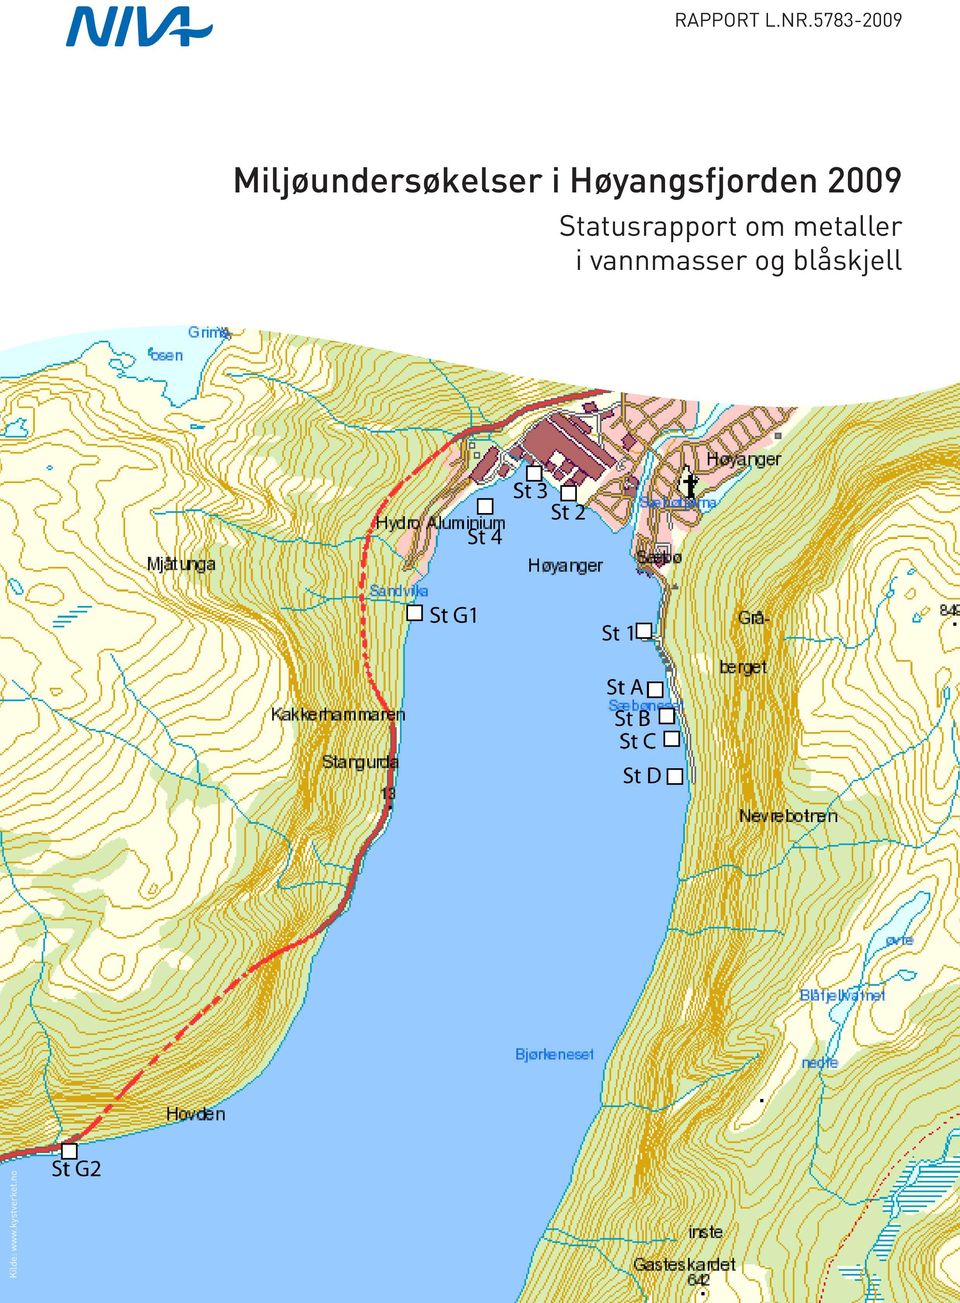 Høyangsfjorden 2009 Kilde: www.